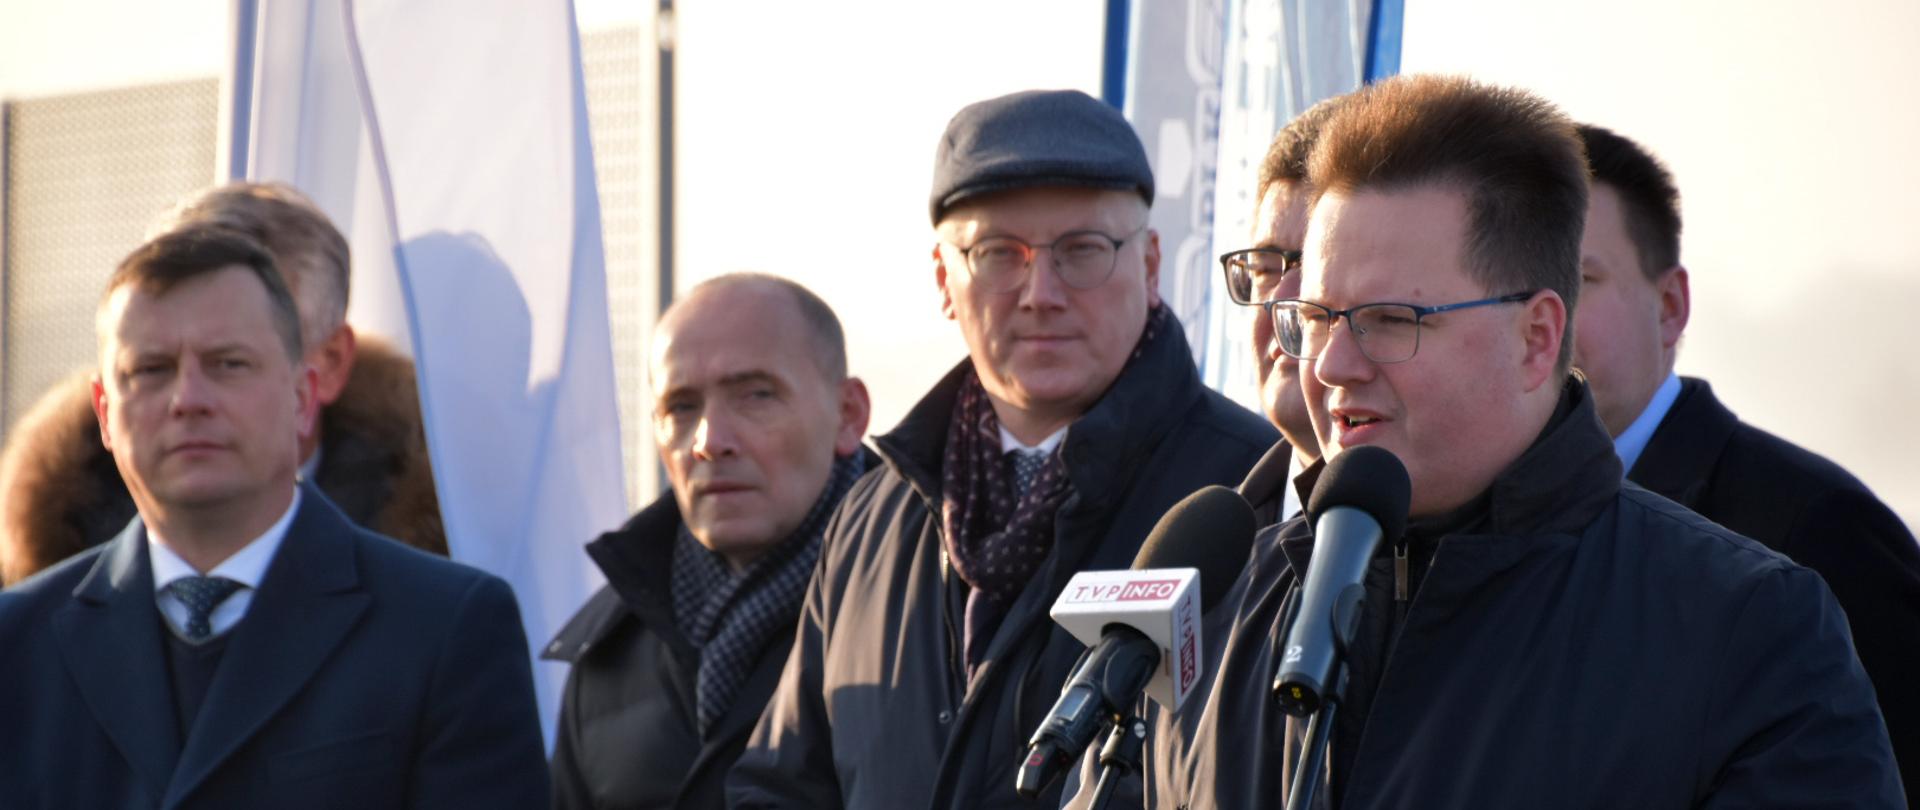 Wiceminister infrastruktury Andrzej Bittel podczas konferencji prasowej zorganizowanej z okazji otwarcia nowego wiaduktu w Tłuszczu